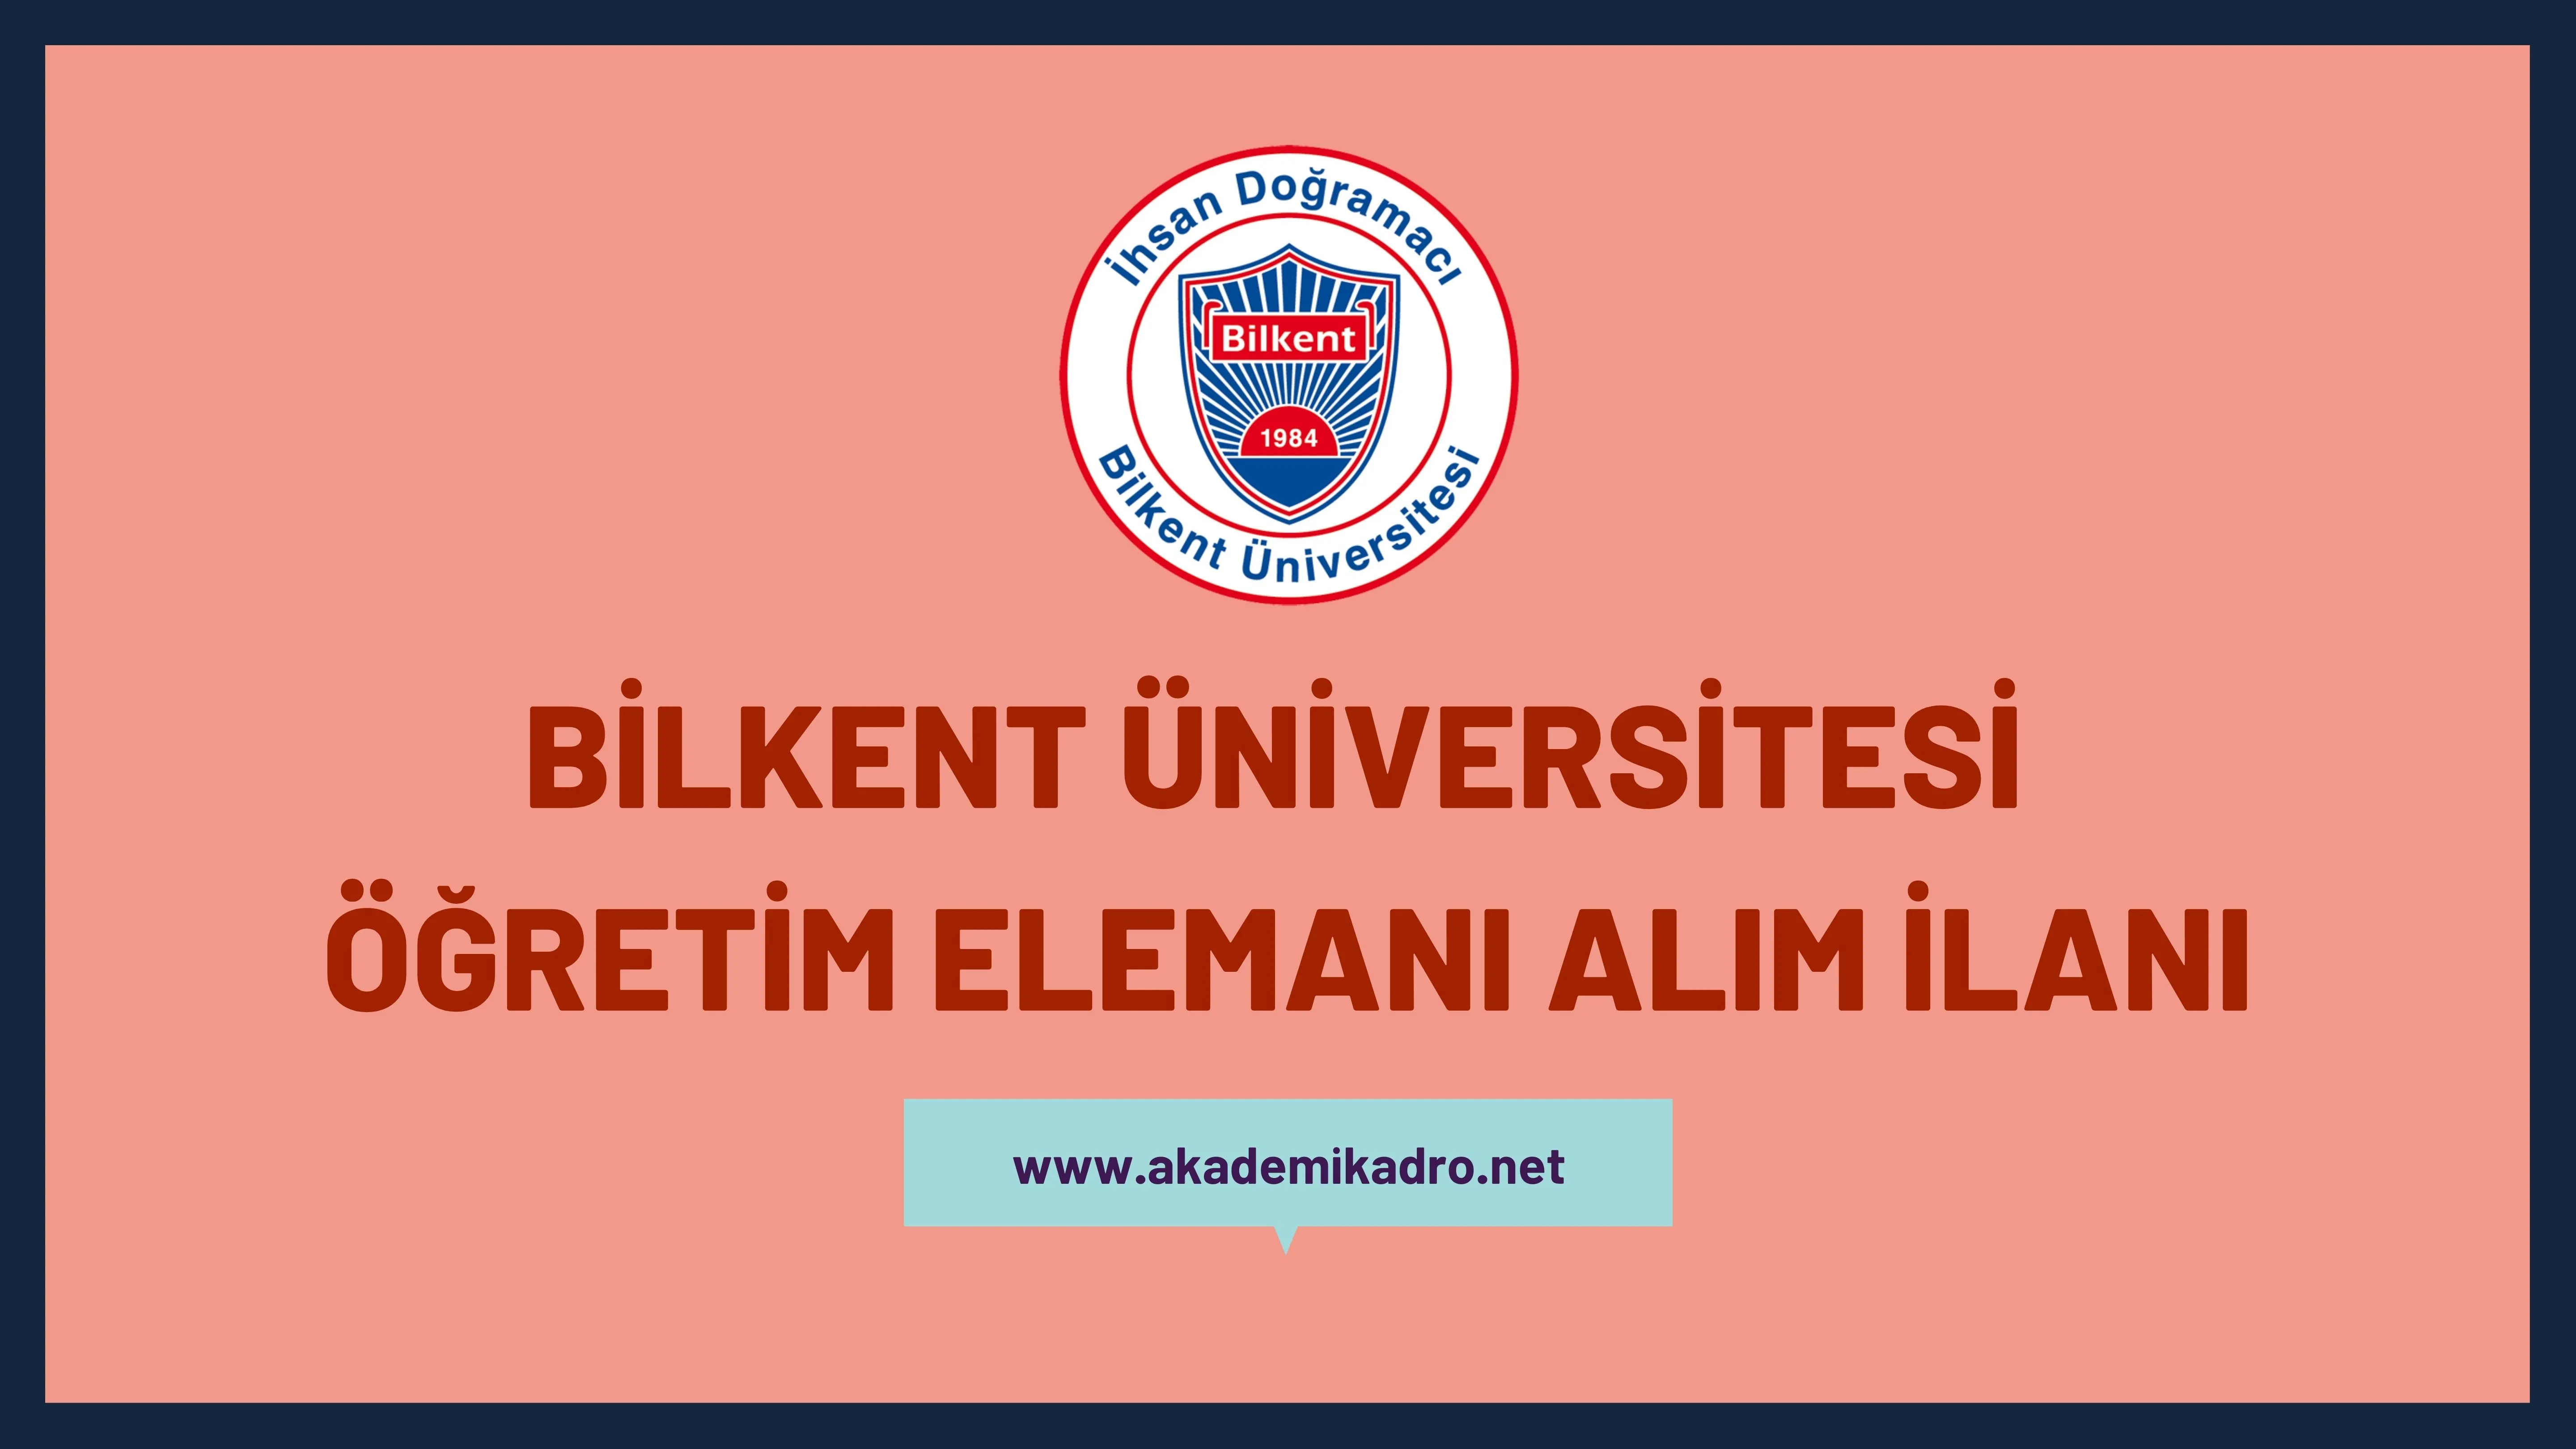 İhsan Doğramacı Bilkent Üniversitesi öğretim görevlisi alacaktır.